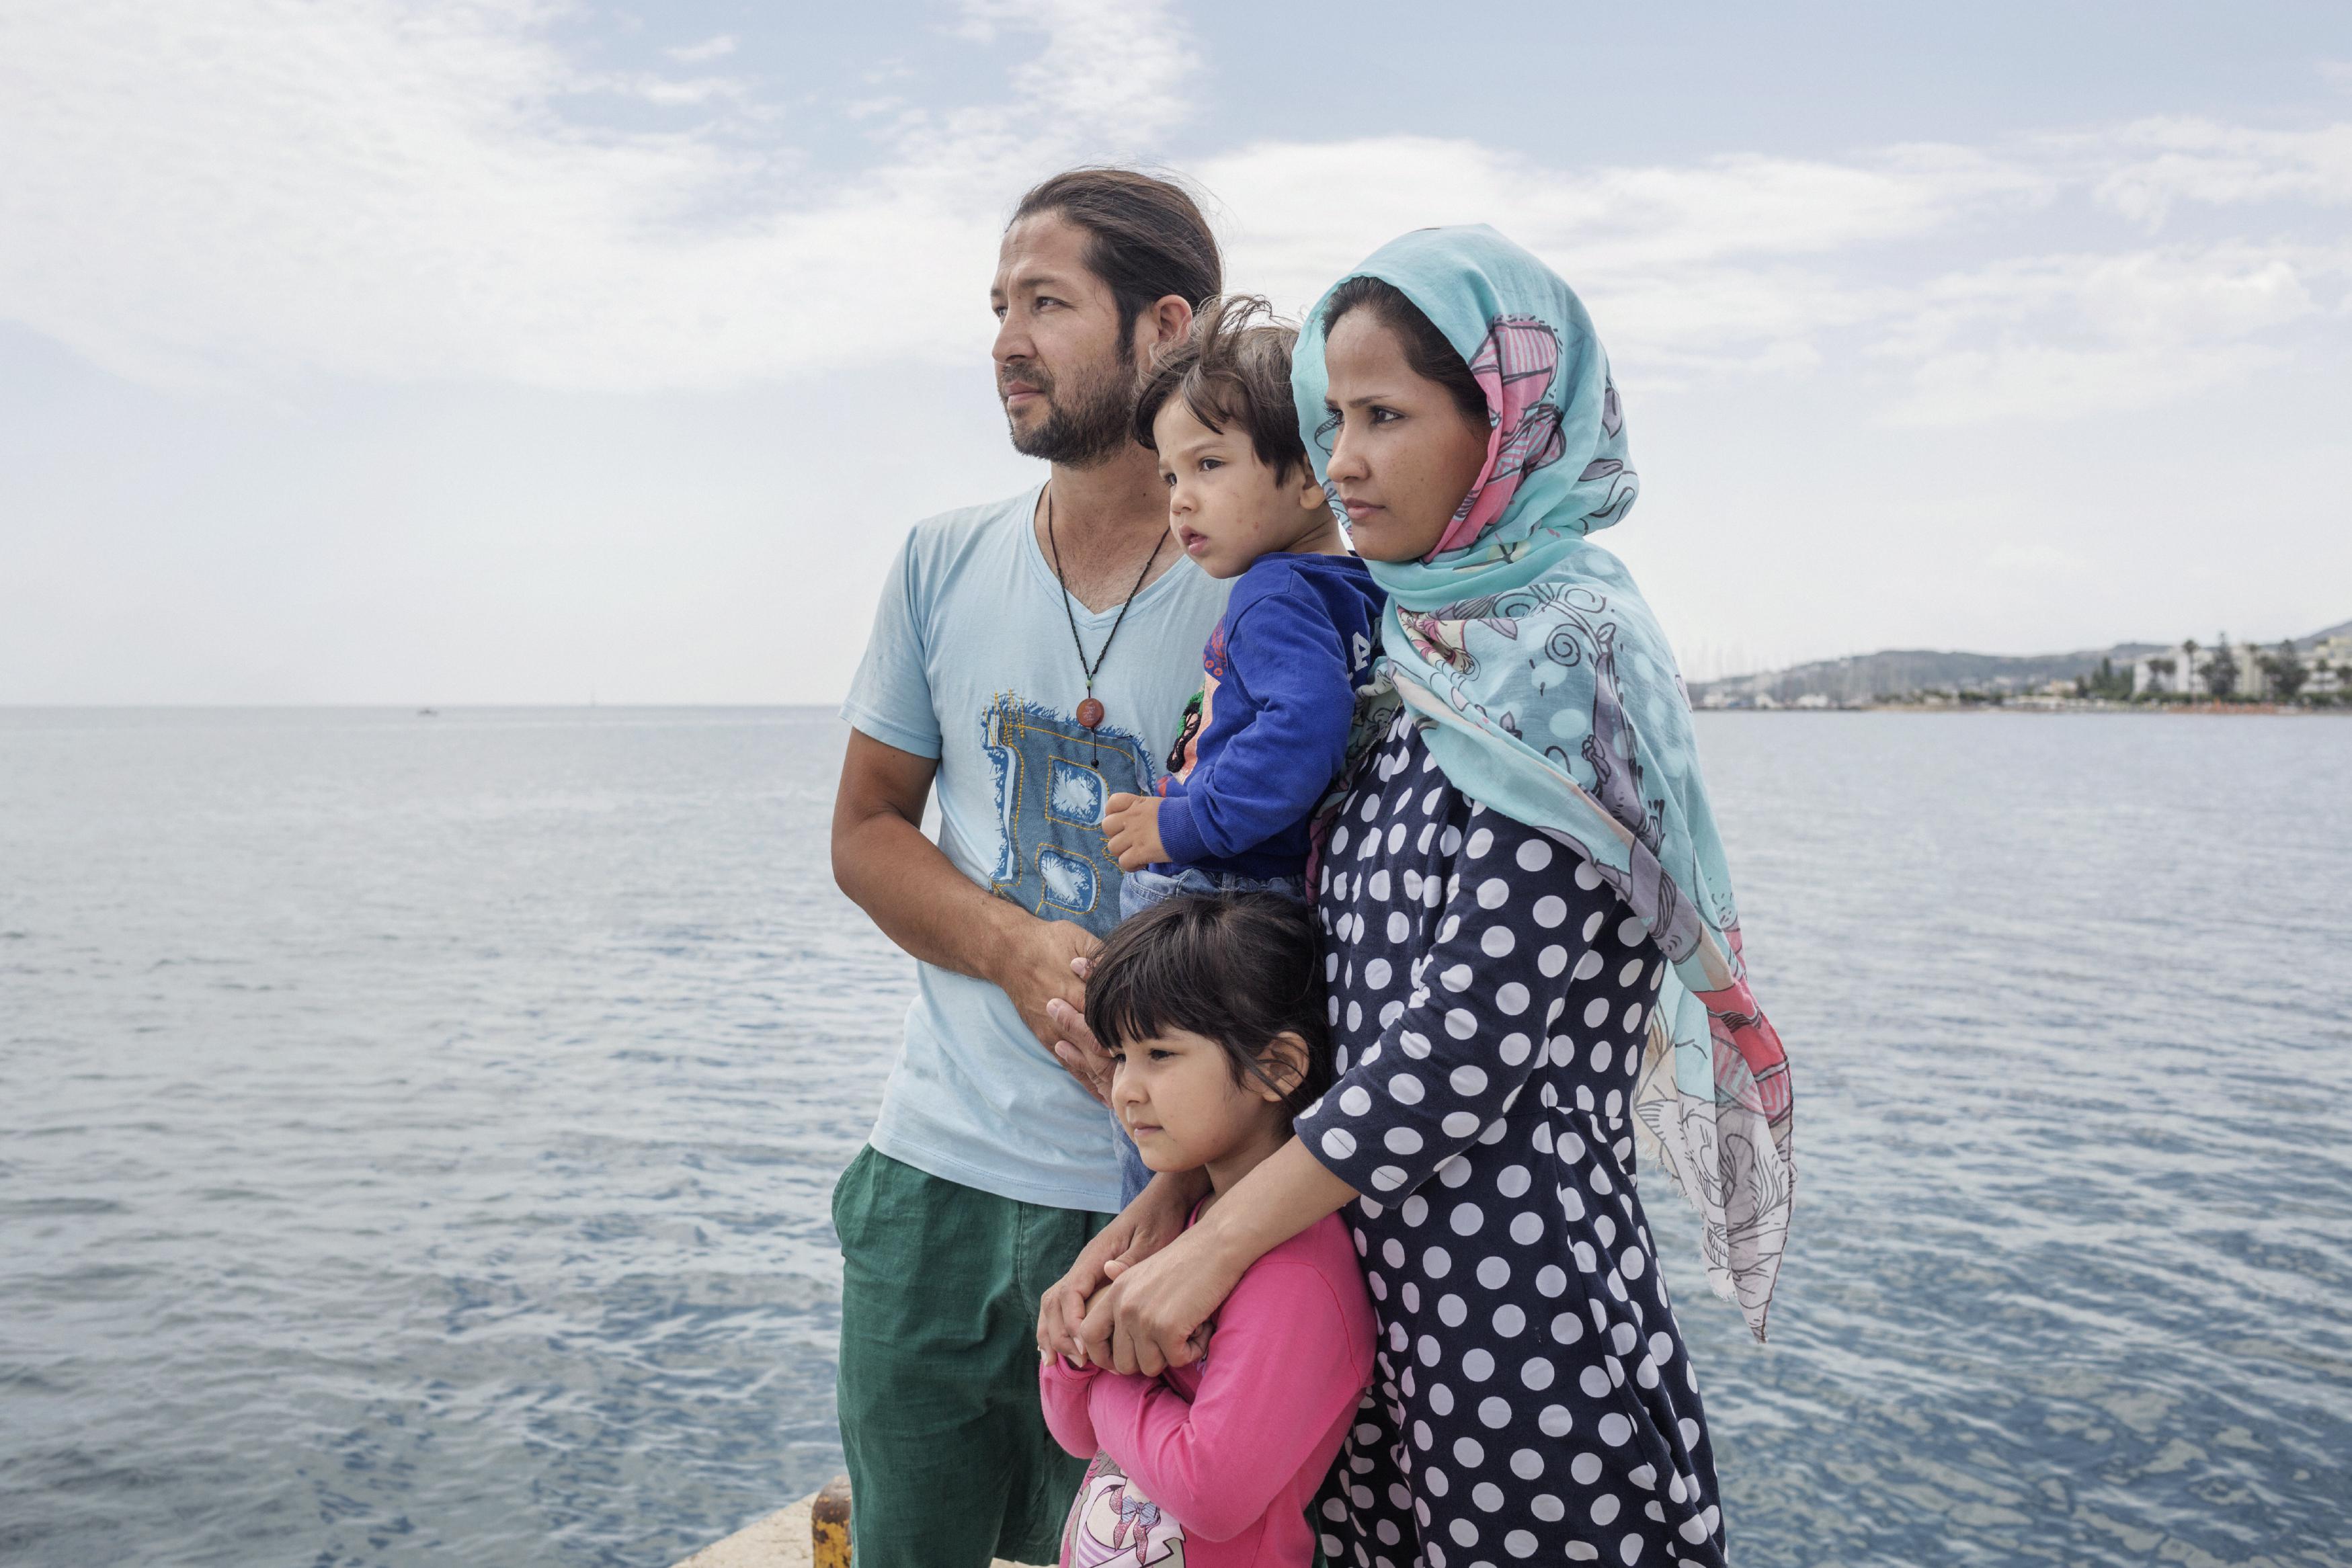 Una famiglia afghana al molo sull'isola di Kos in Grecia, 2015. (Foto di Alessandro Penso)